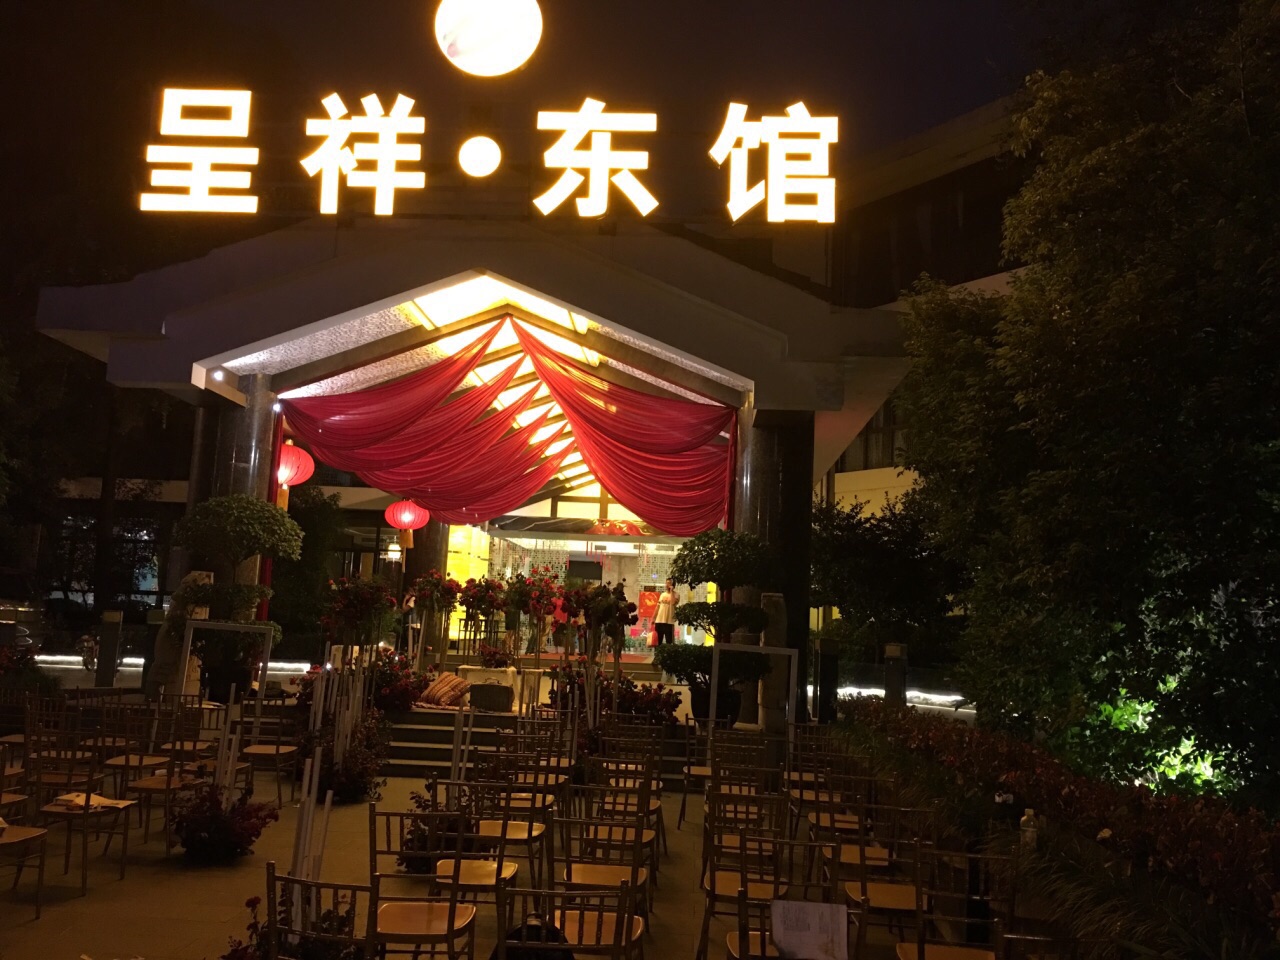 朋友们极力推荐的这家呈祥东馆,餐馆就在锦城公园里面,环境非常优美